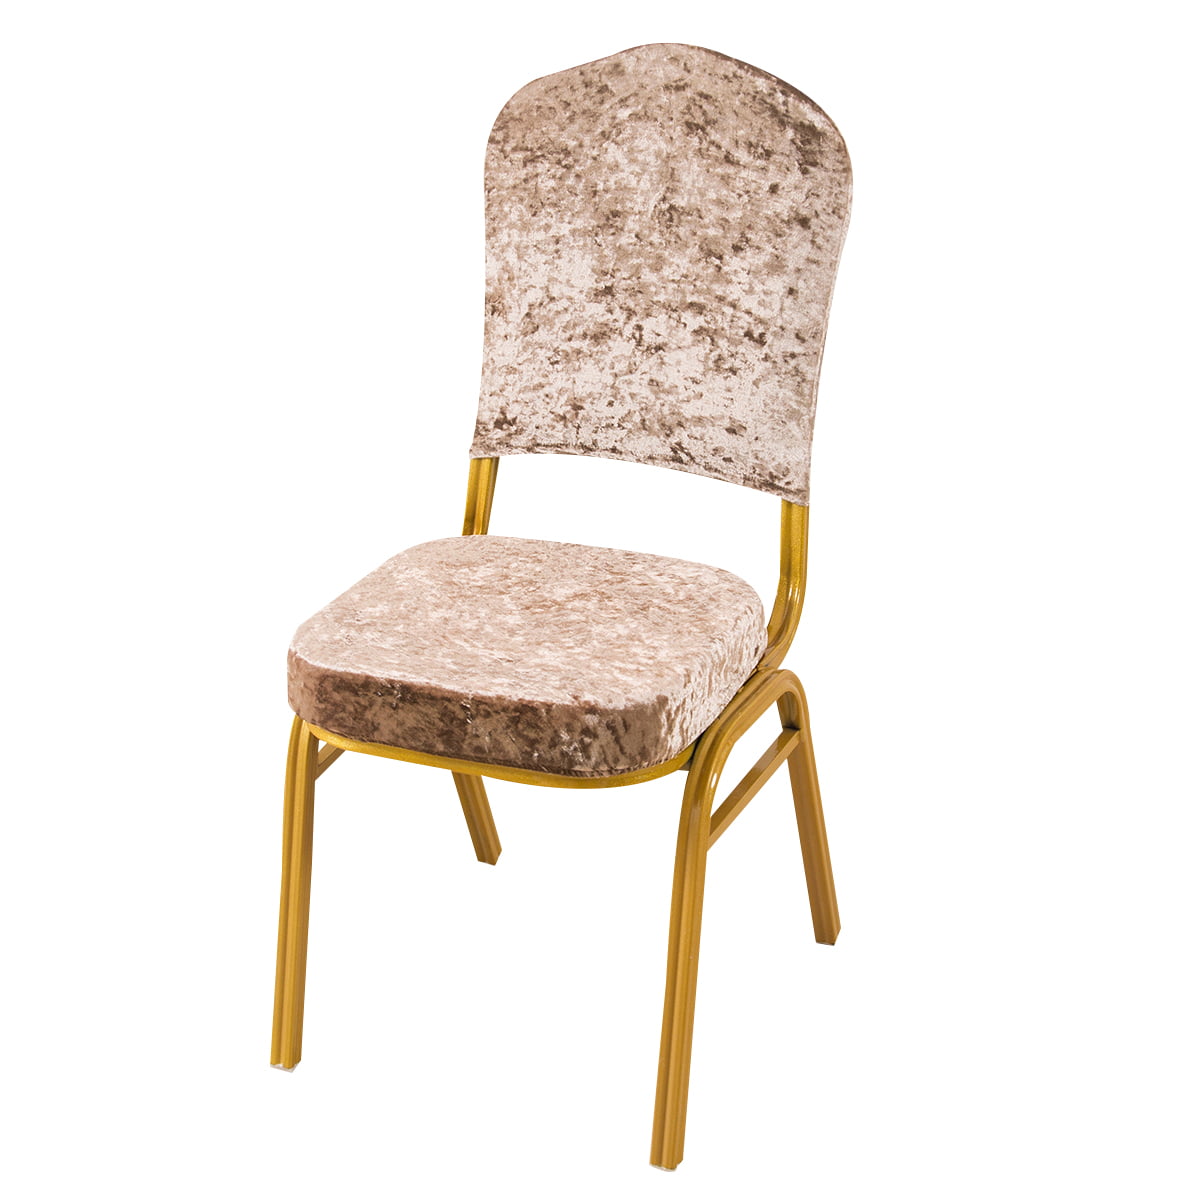 1-10 Split Velvet Split Chiavari Chair Cover Stretch Seat Covers Home Slipcover 